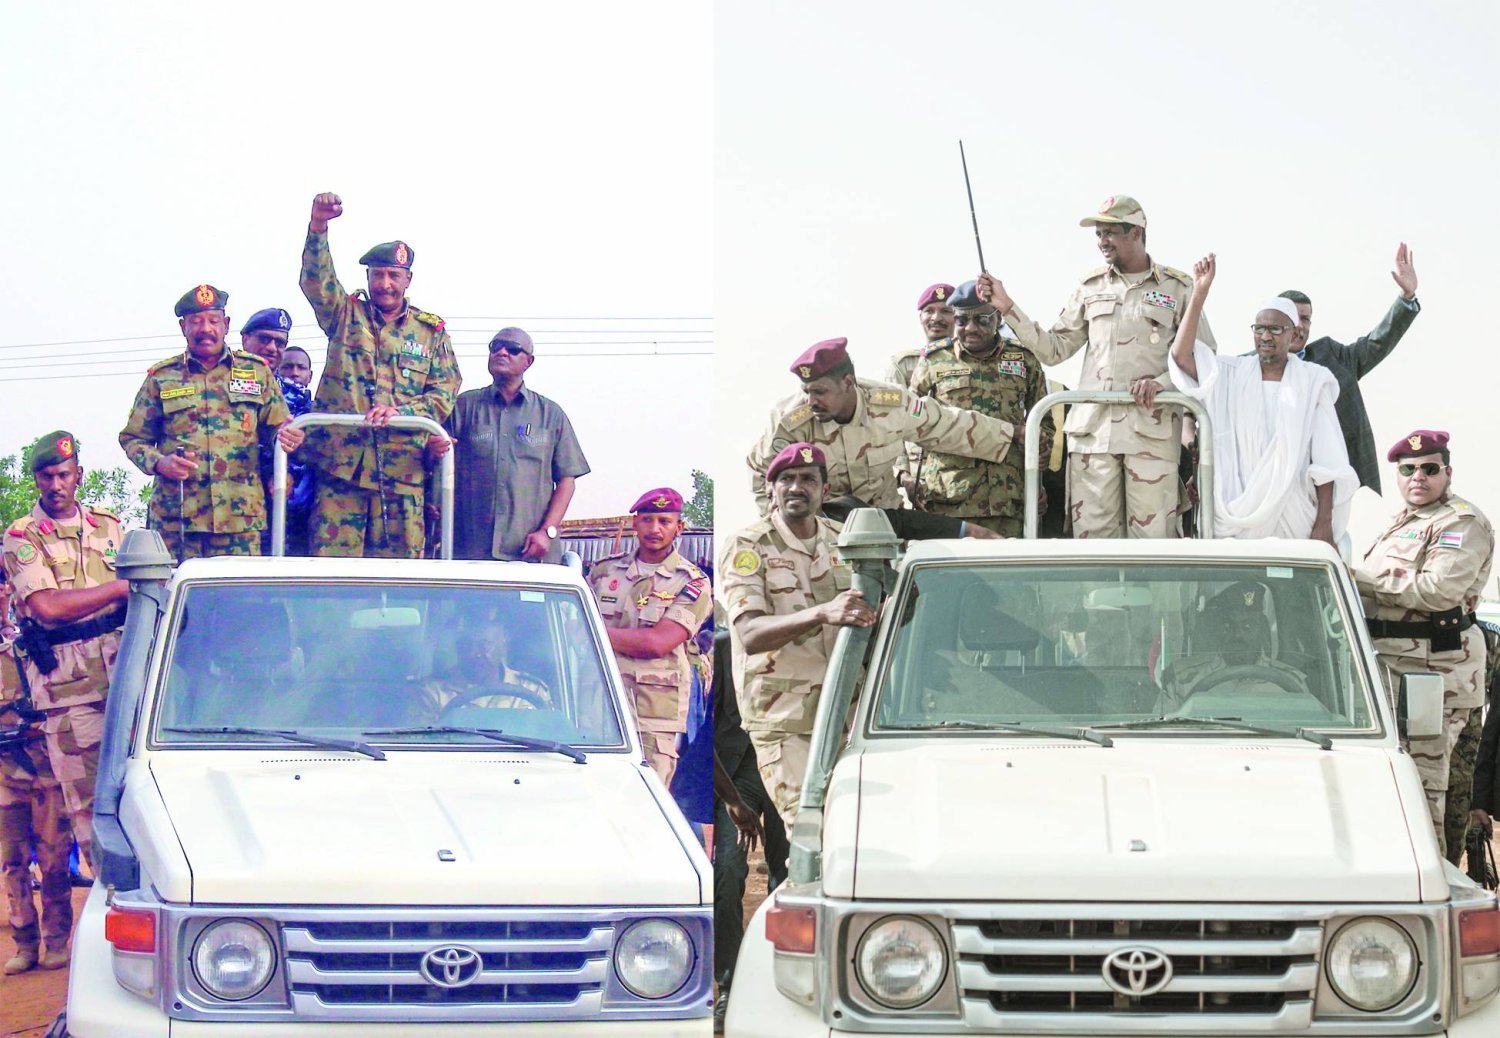 Sudan Ordusu Komutanı Korgeneral Abdulfettah el-Burhan (solda) ve Hızlı Destek Kuvvetleri Komutanı Korgeneral Muhammed Hamdan Daklu (Hamideti), 2019. (AFP)